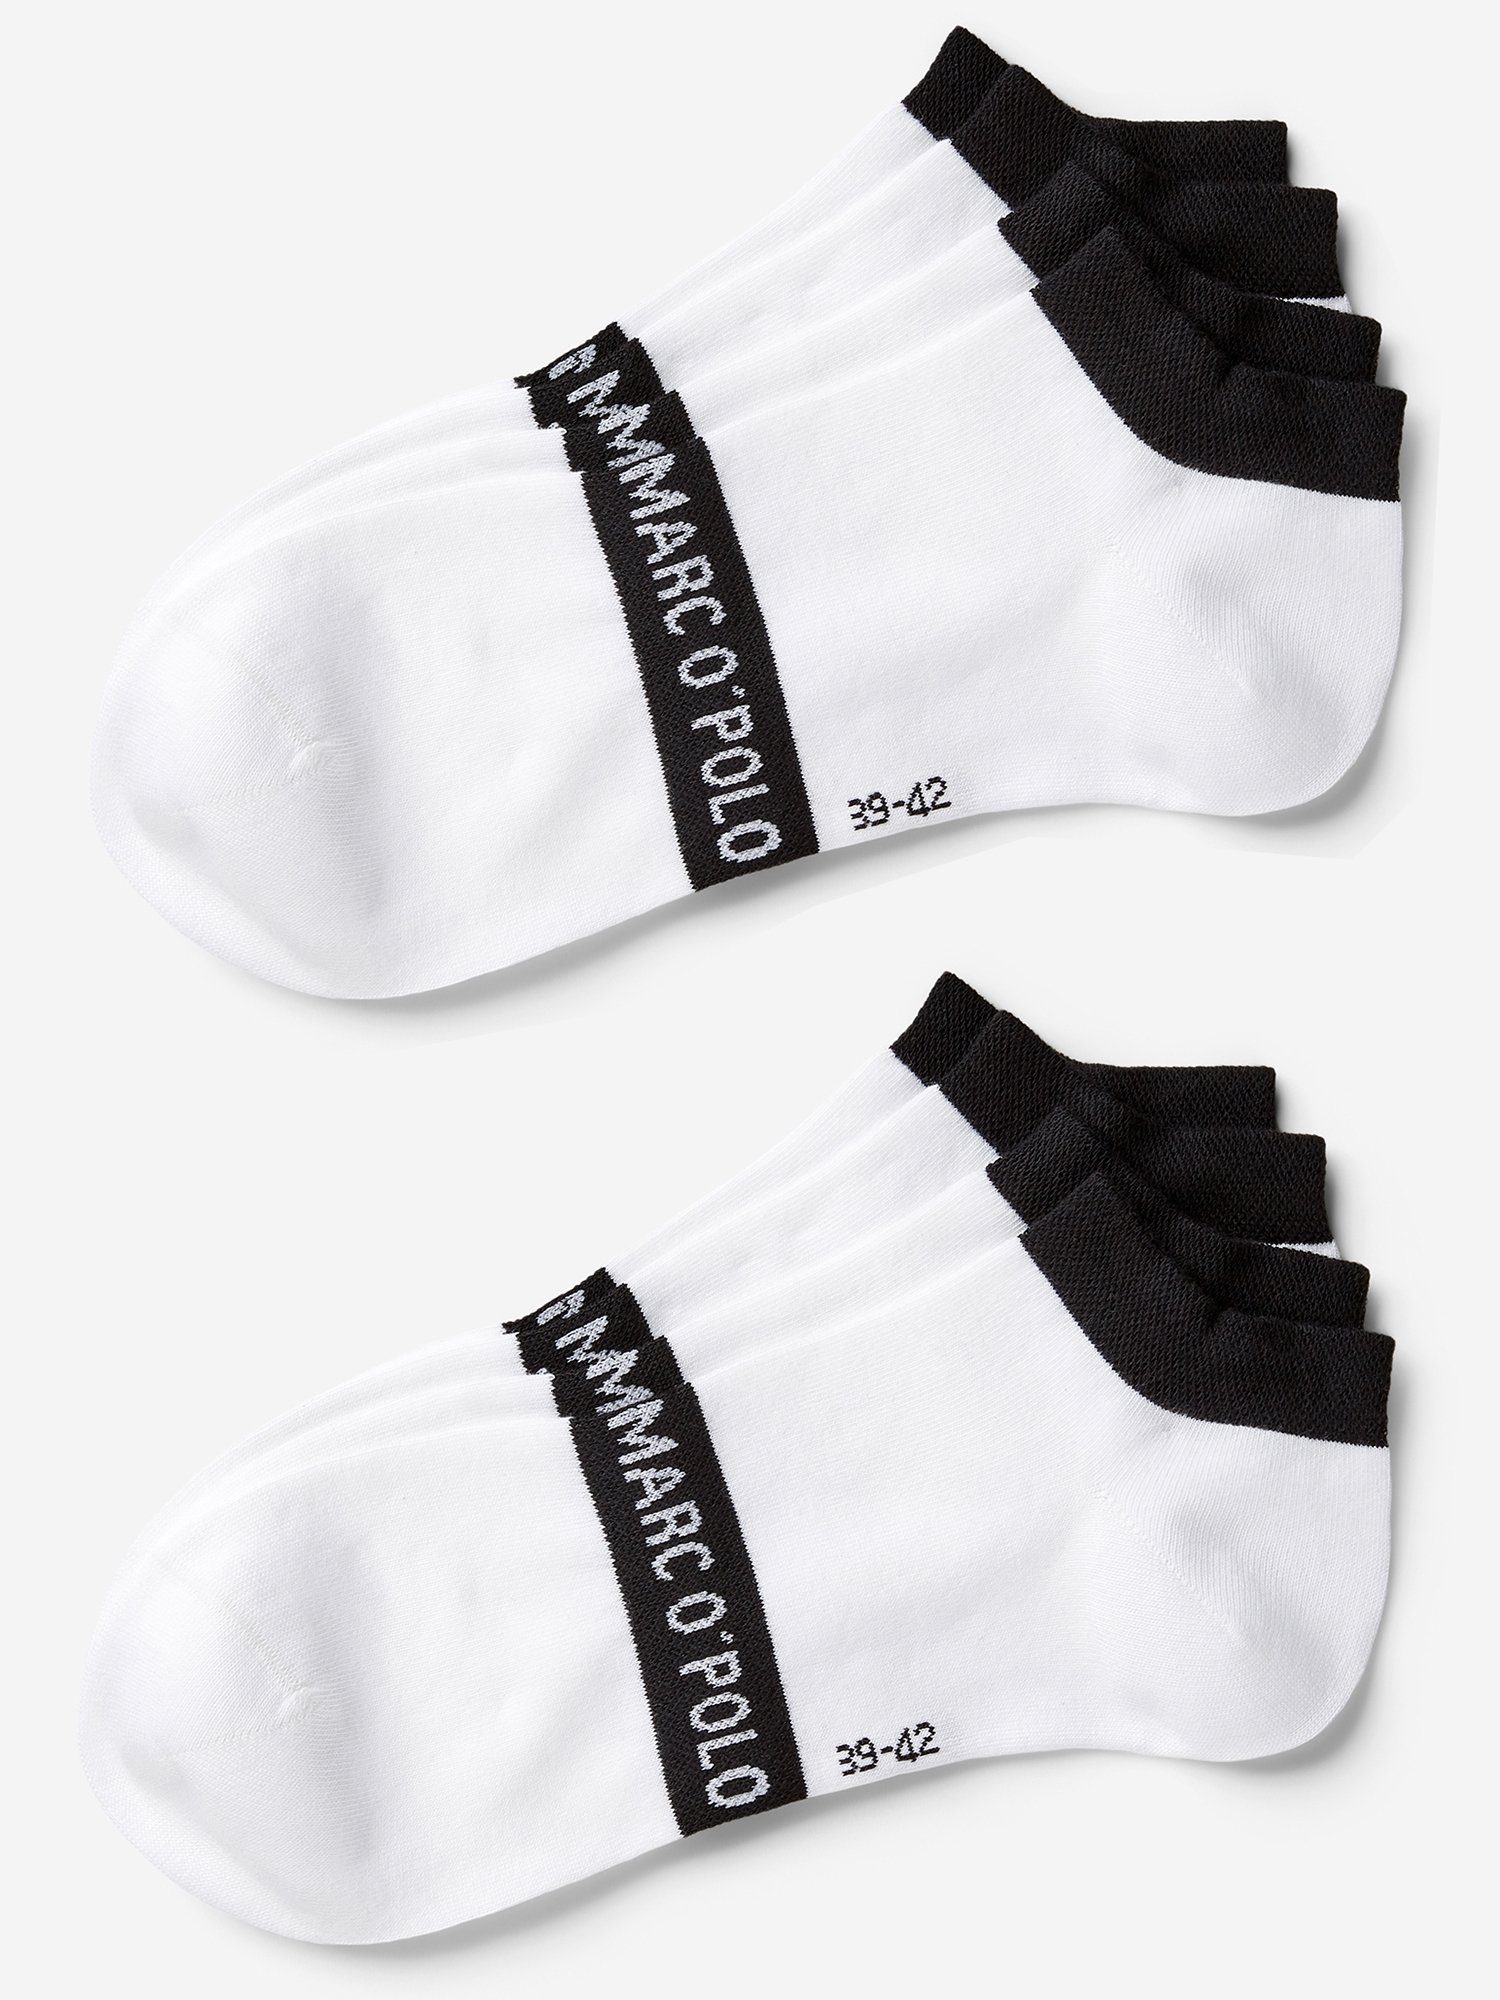 Marc O'Polo Herren Socken online kaufen | OTTO